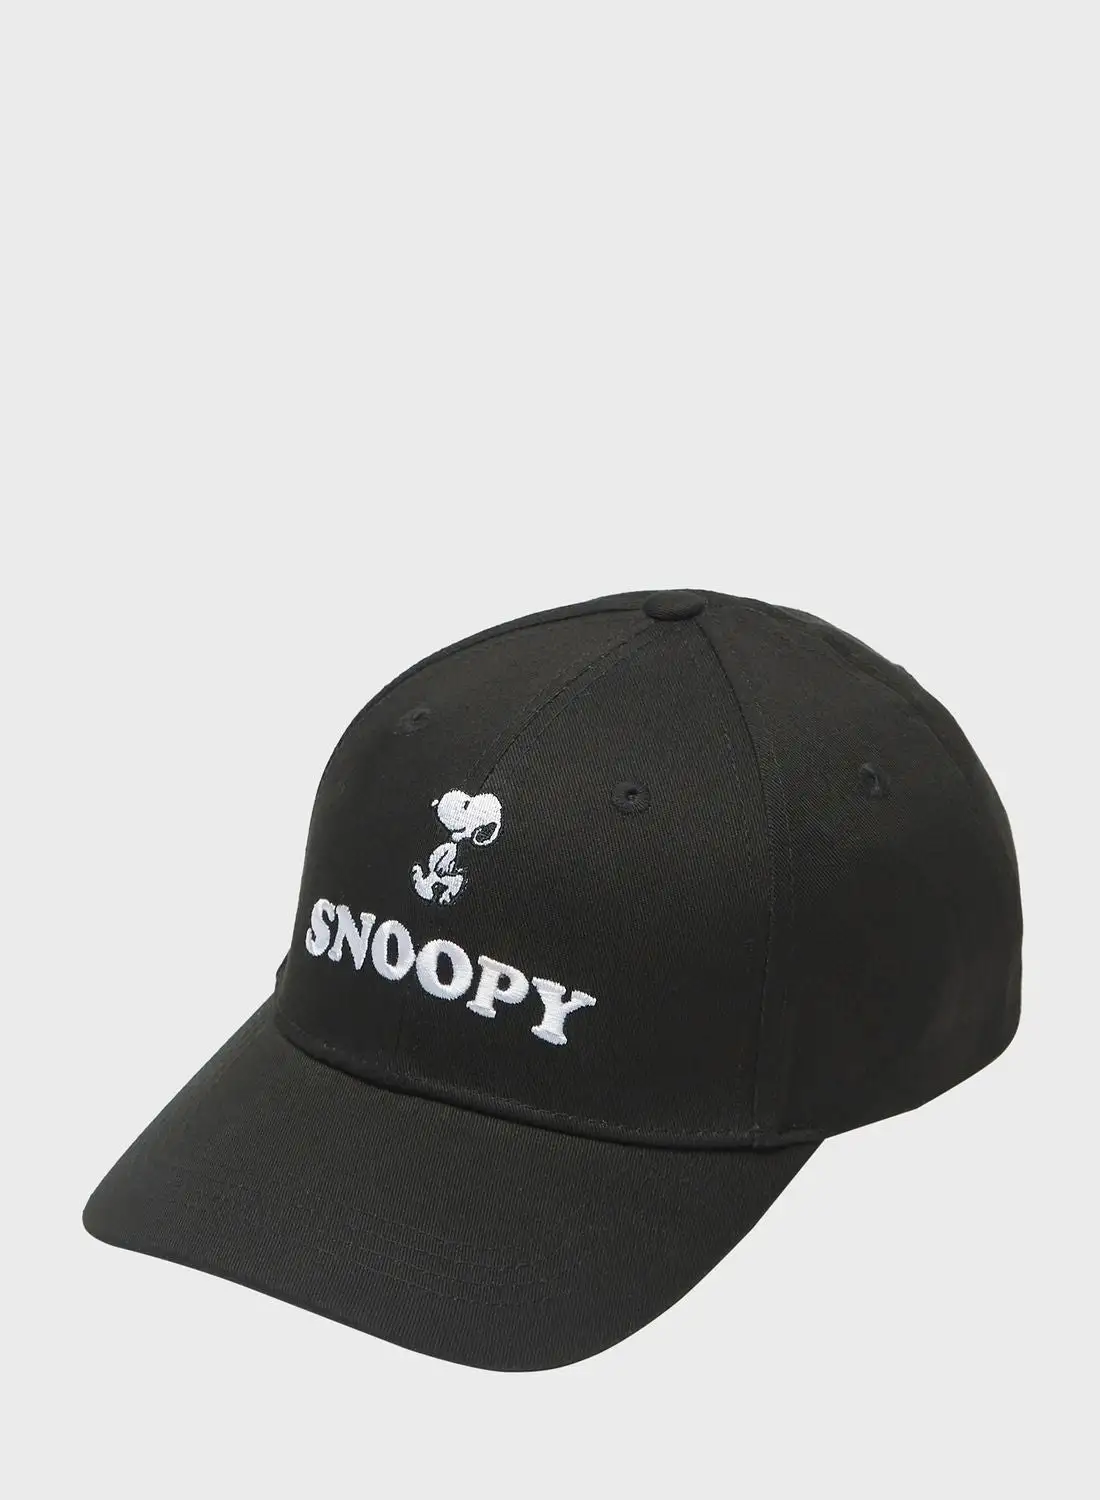 قبعة مطرزة لشخصيات SP سنوبي مع مشبك وحلقة تثبيت